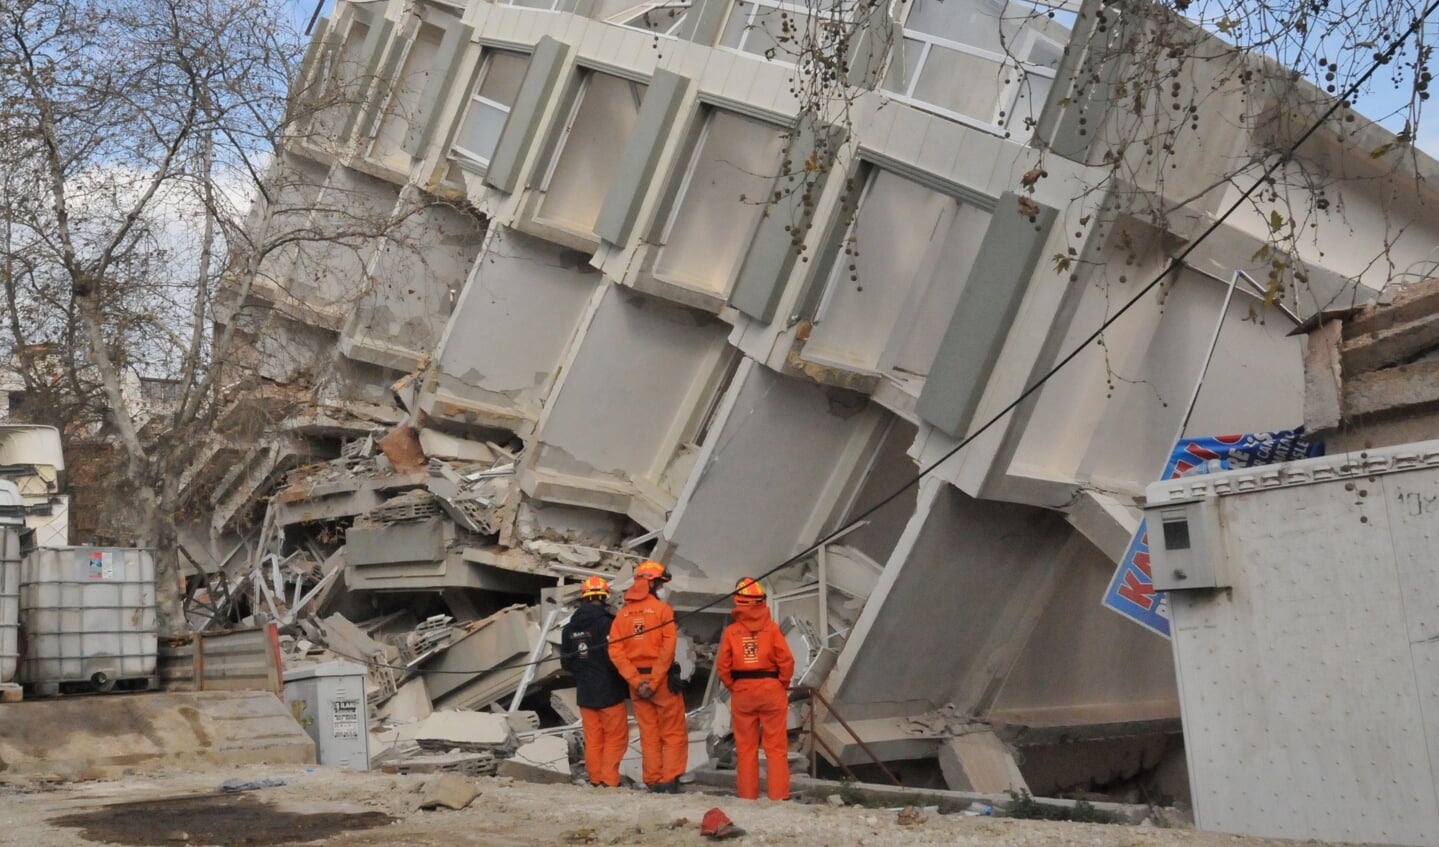 Nederlands reddingsteam USAR aan het werk in het door een aardbeving getroffen gebied in Turkije.